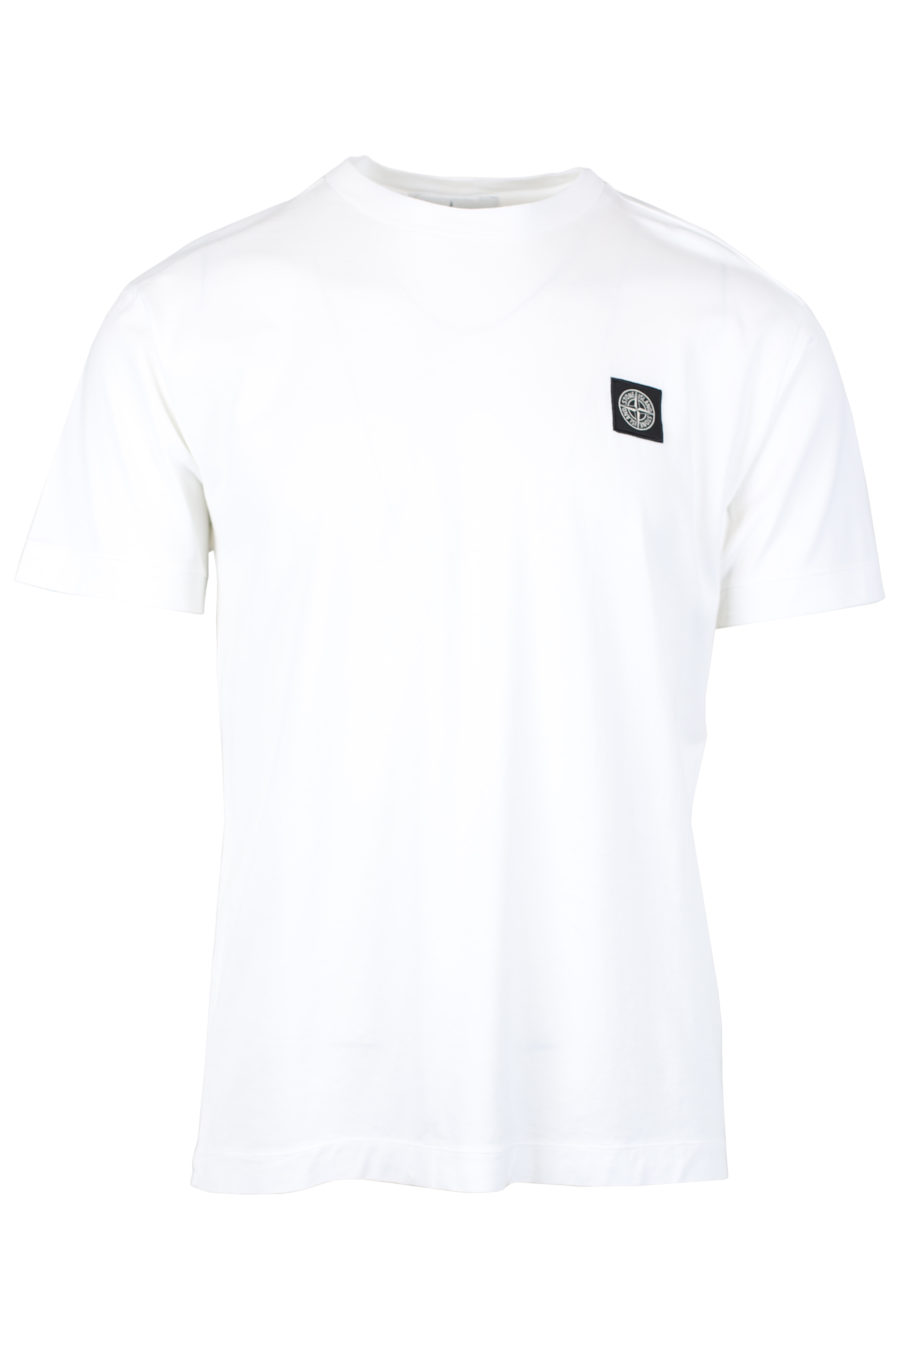 T-shirt blanc avec écusson - IMG 2491